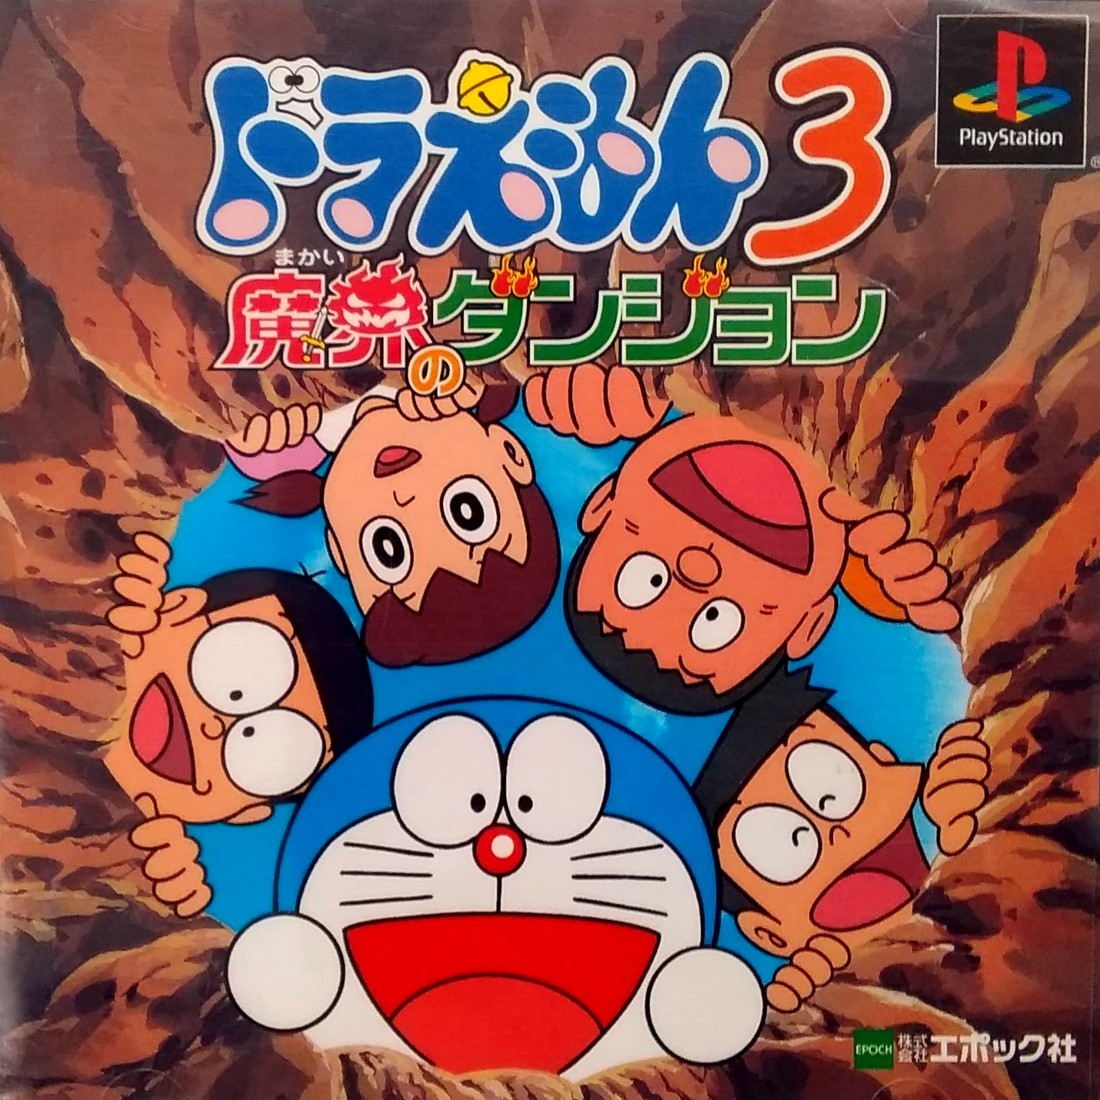 Capa do jogo Doraemon 3: Makai no Dungeon